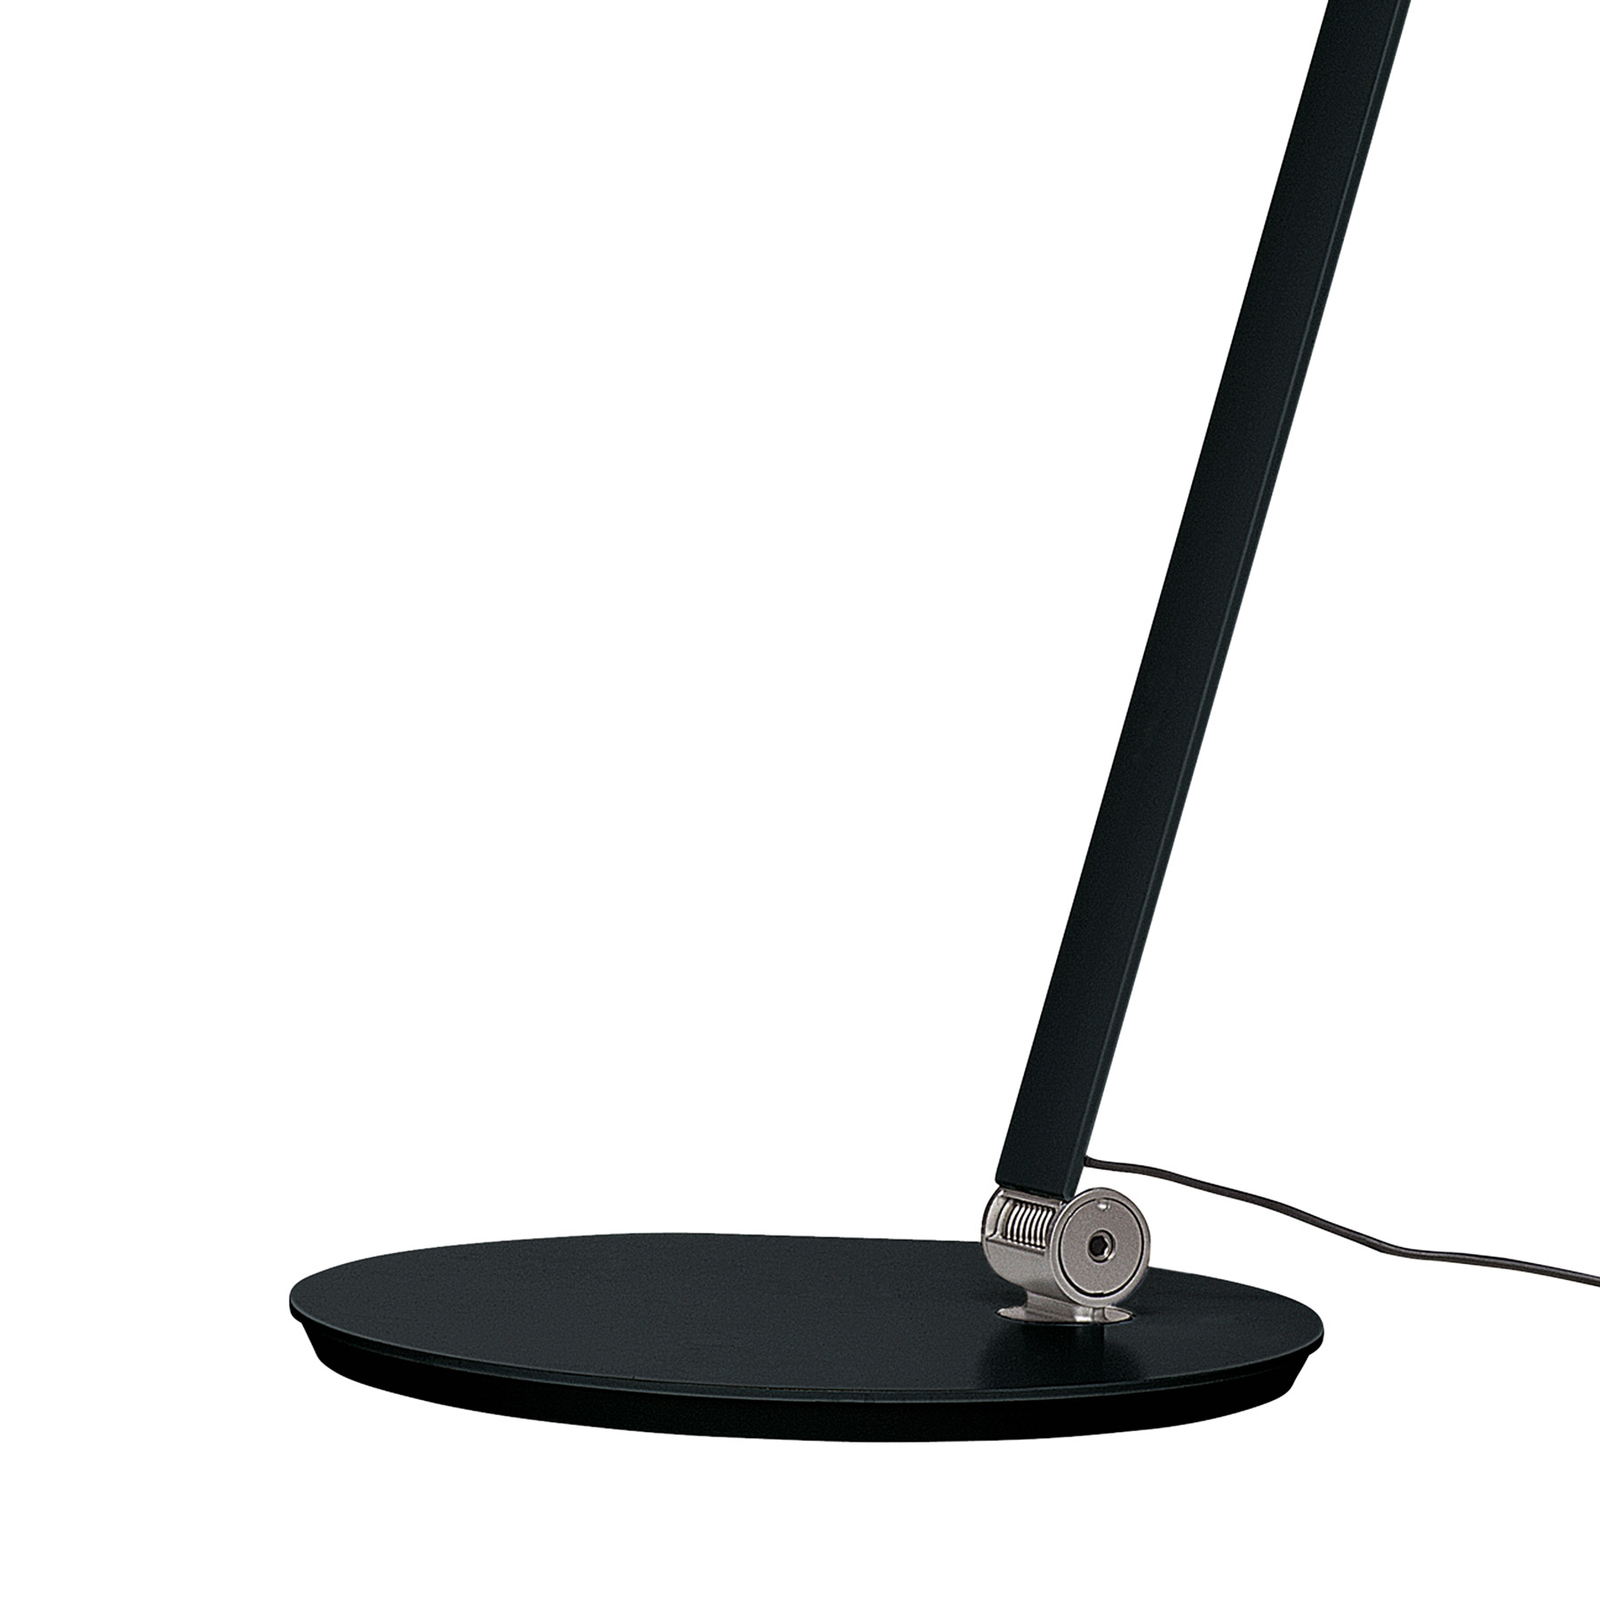 Louis Poulsen NJP stolová lampa 3 000 K čierna